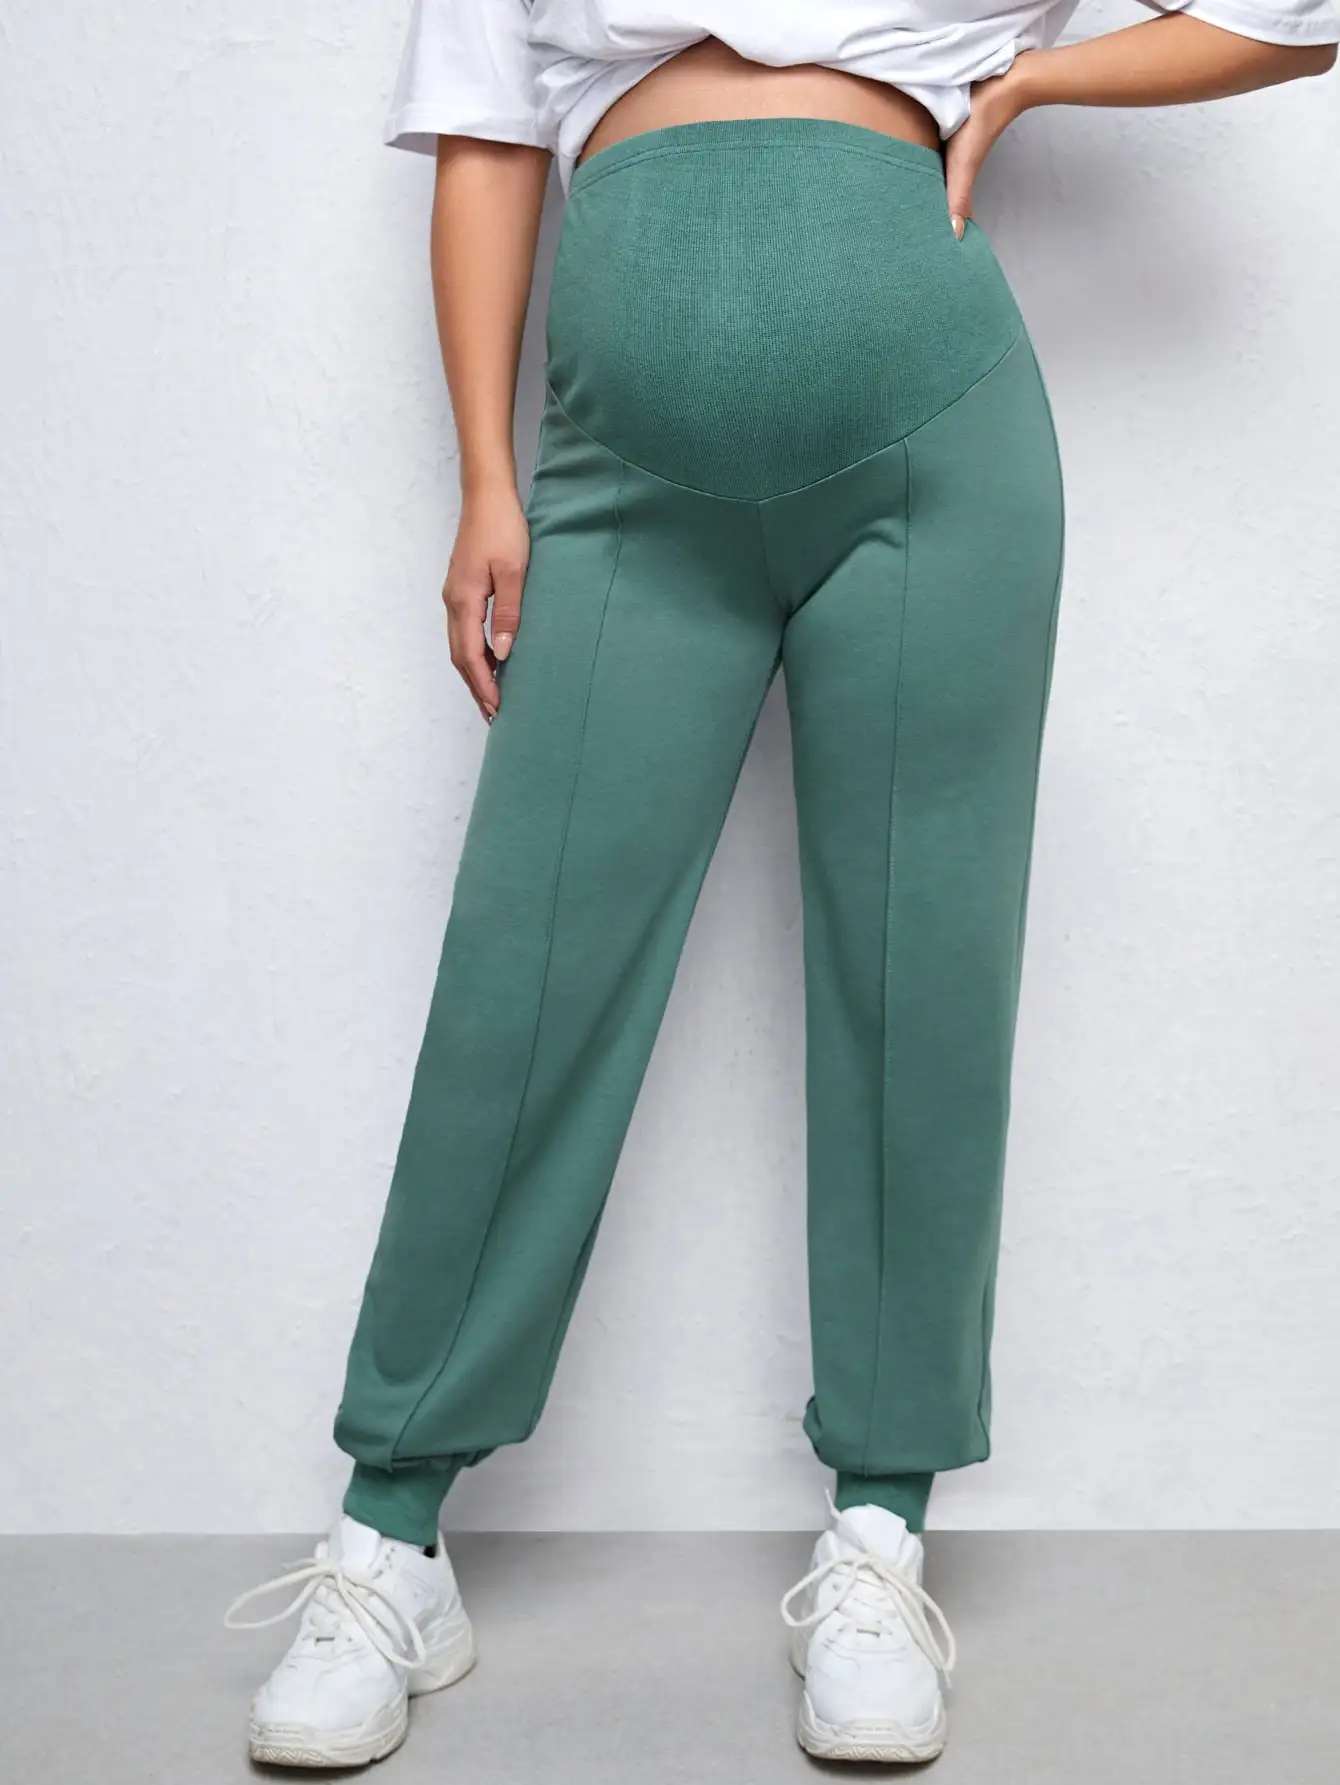 Pantalon de grossesse femme enceinte MamaFit